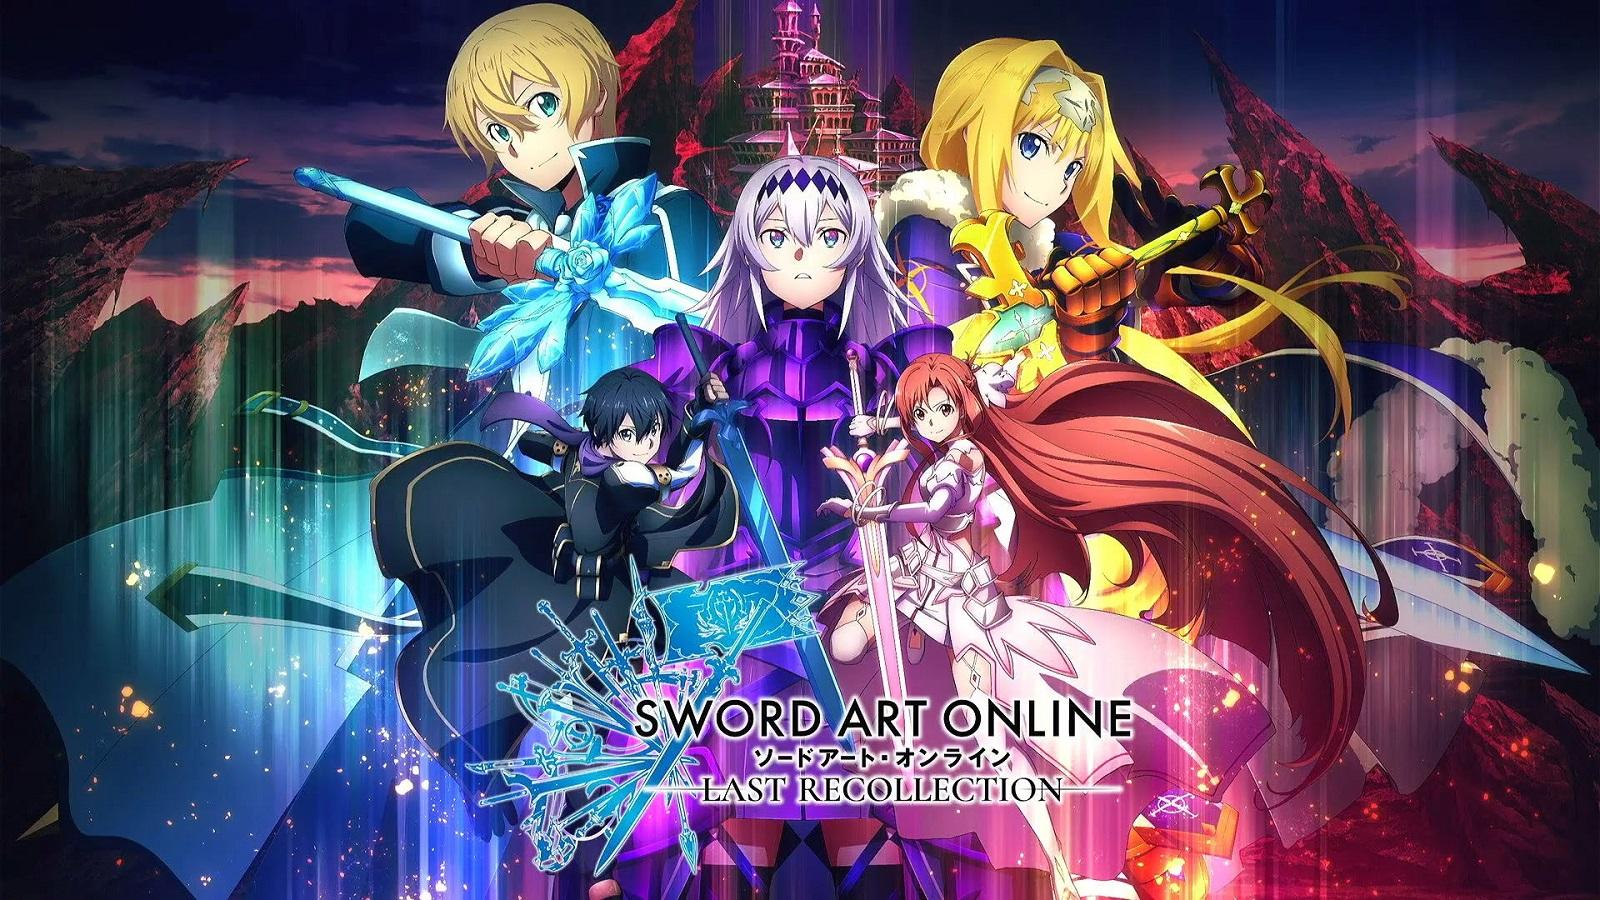 Sword Art Online on X: Watch Sword Art Online the Movie